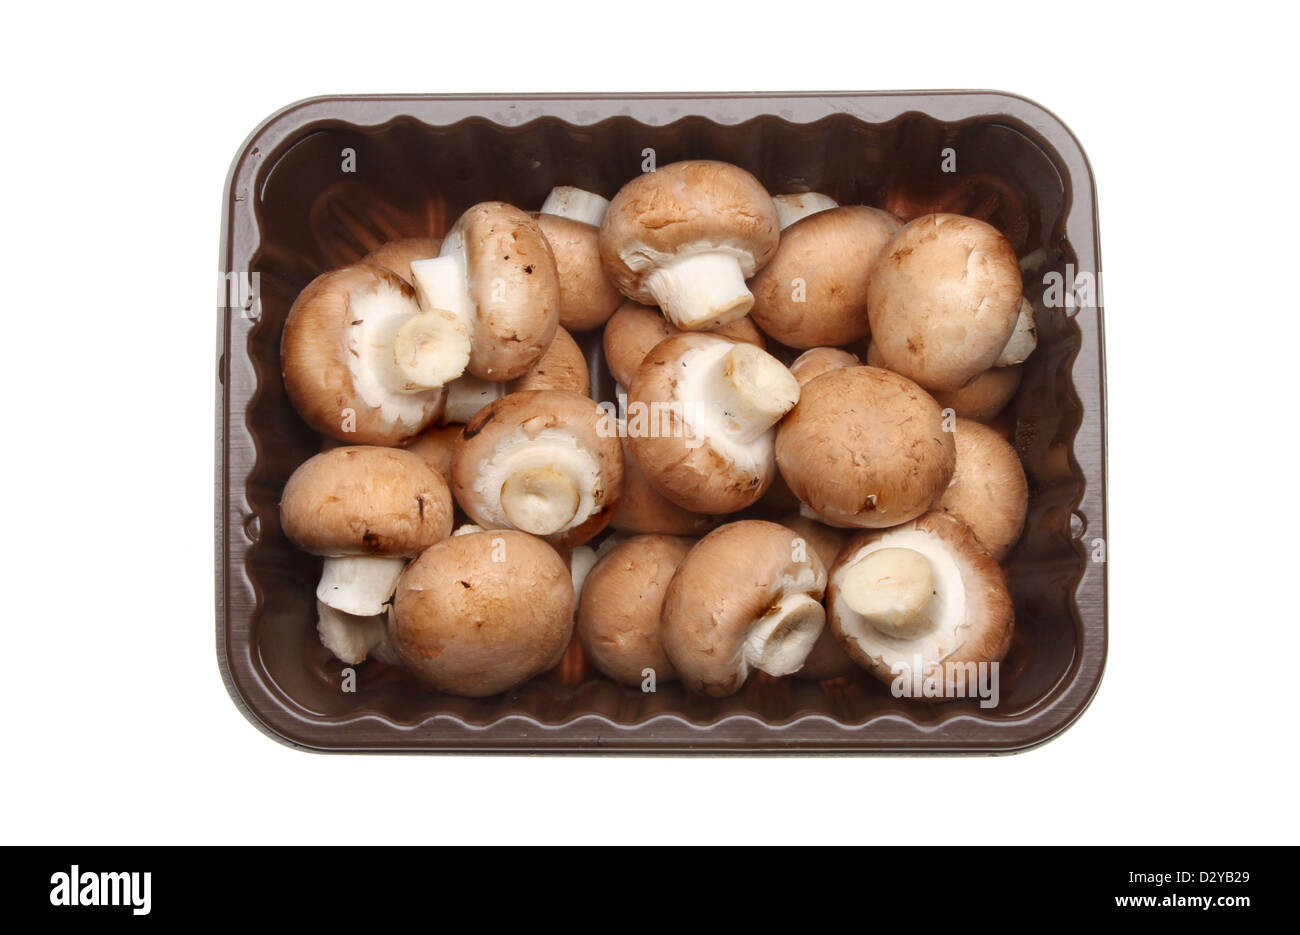 Funghi castagne in un vassoio di plastica isolati contro white Foto Stock